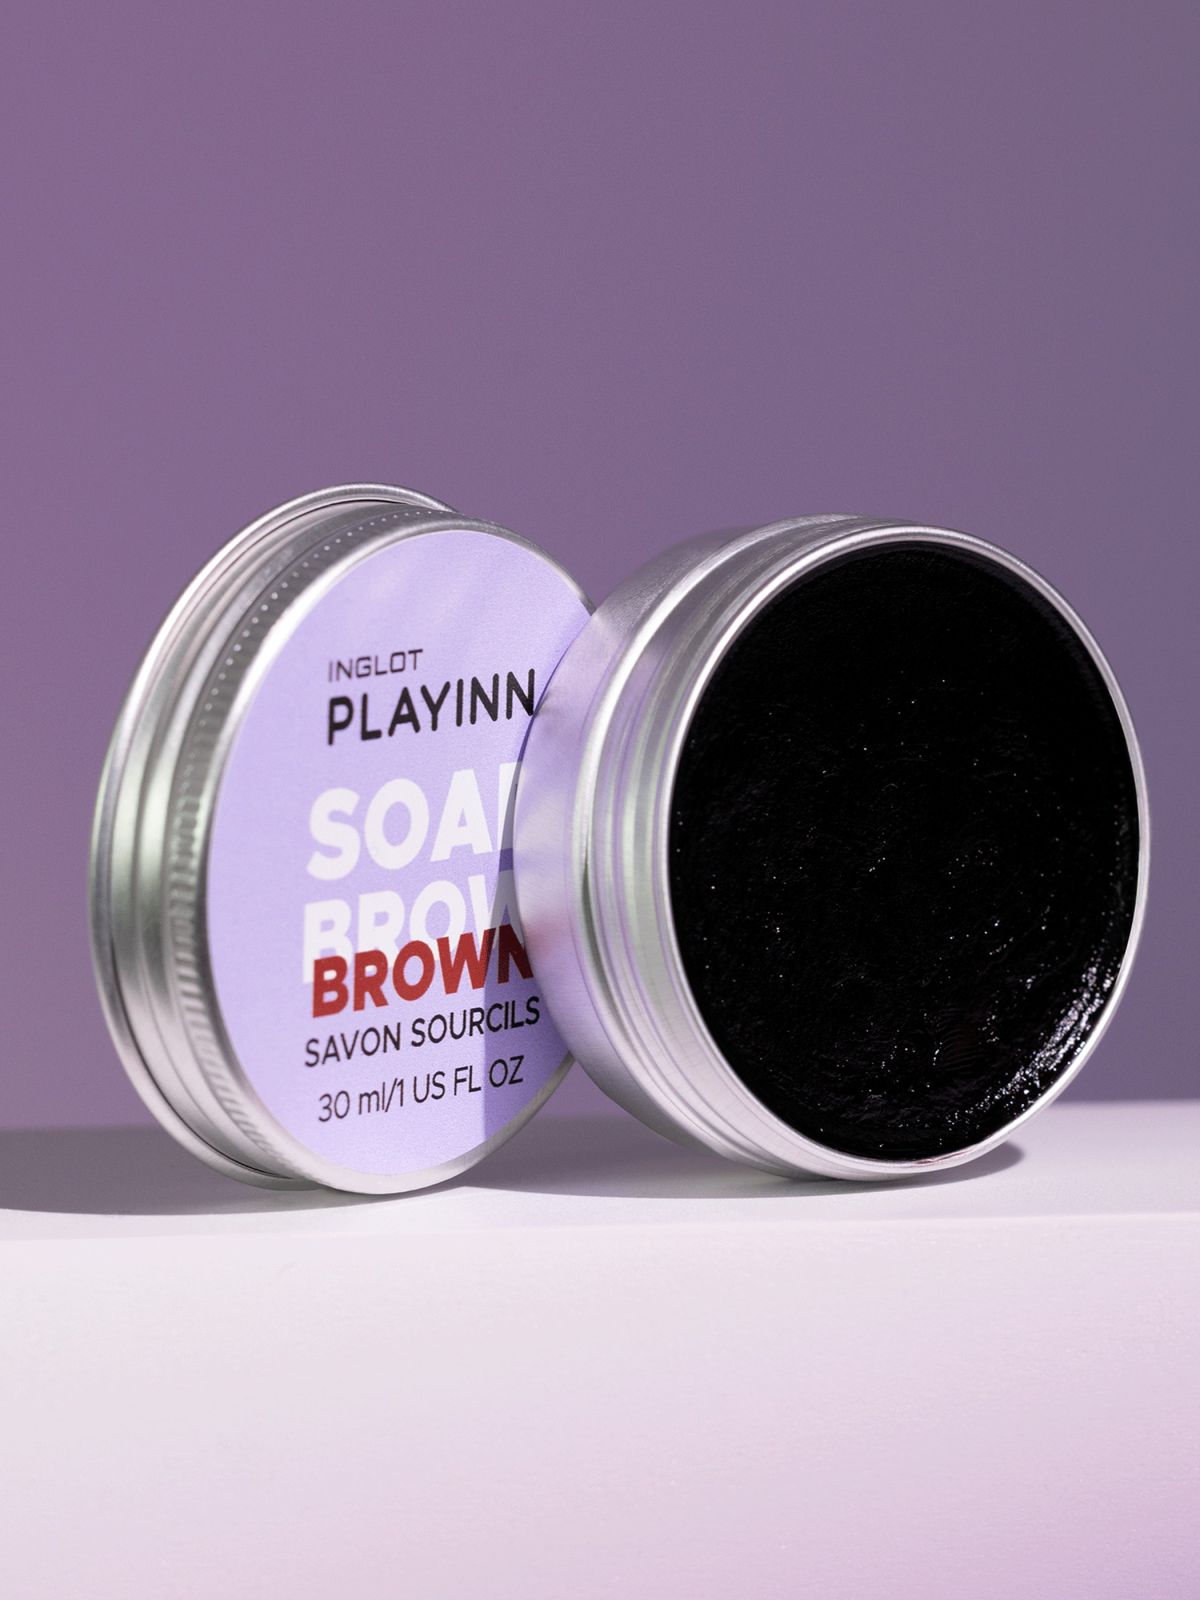  ווקס לעיצוב ולקיבוע הגבות בגוון חום INGLOT Playinn Soap Brow Brown של INGLOT